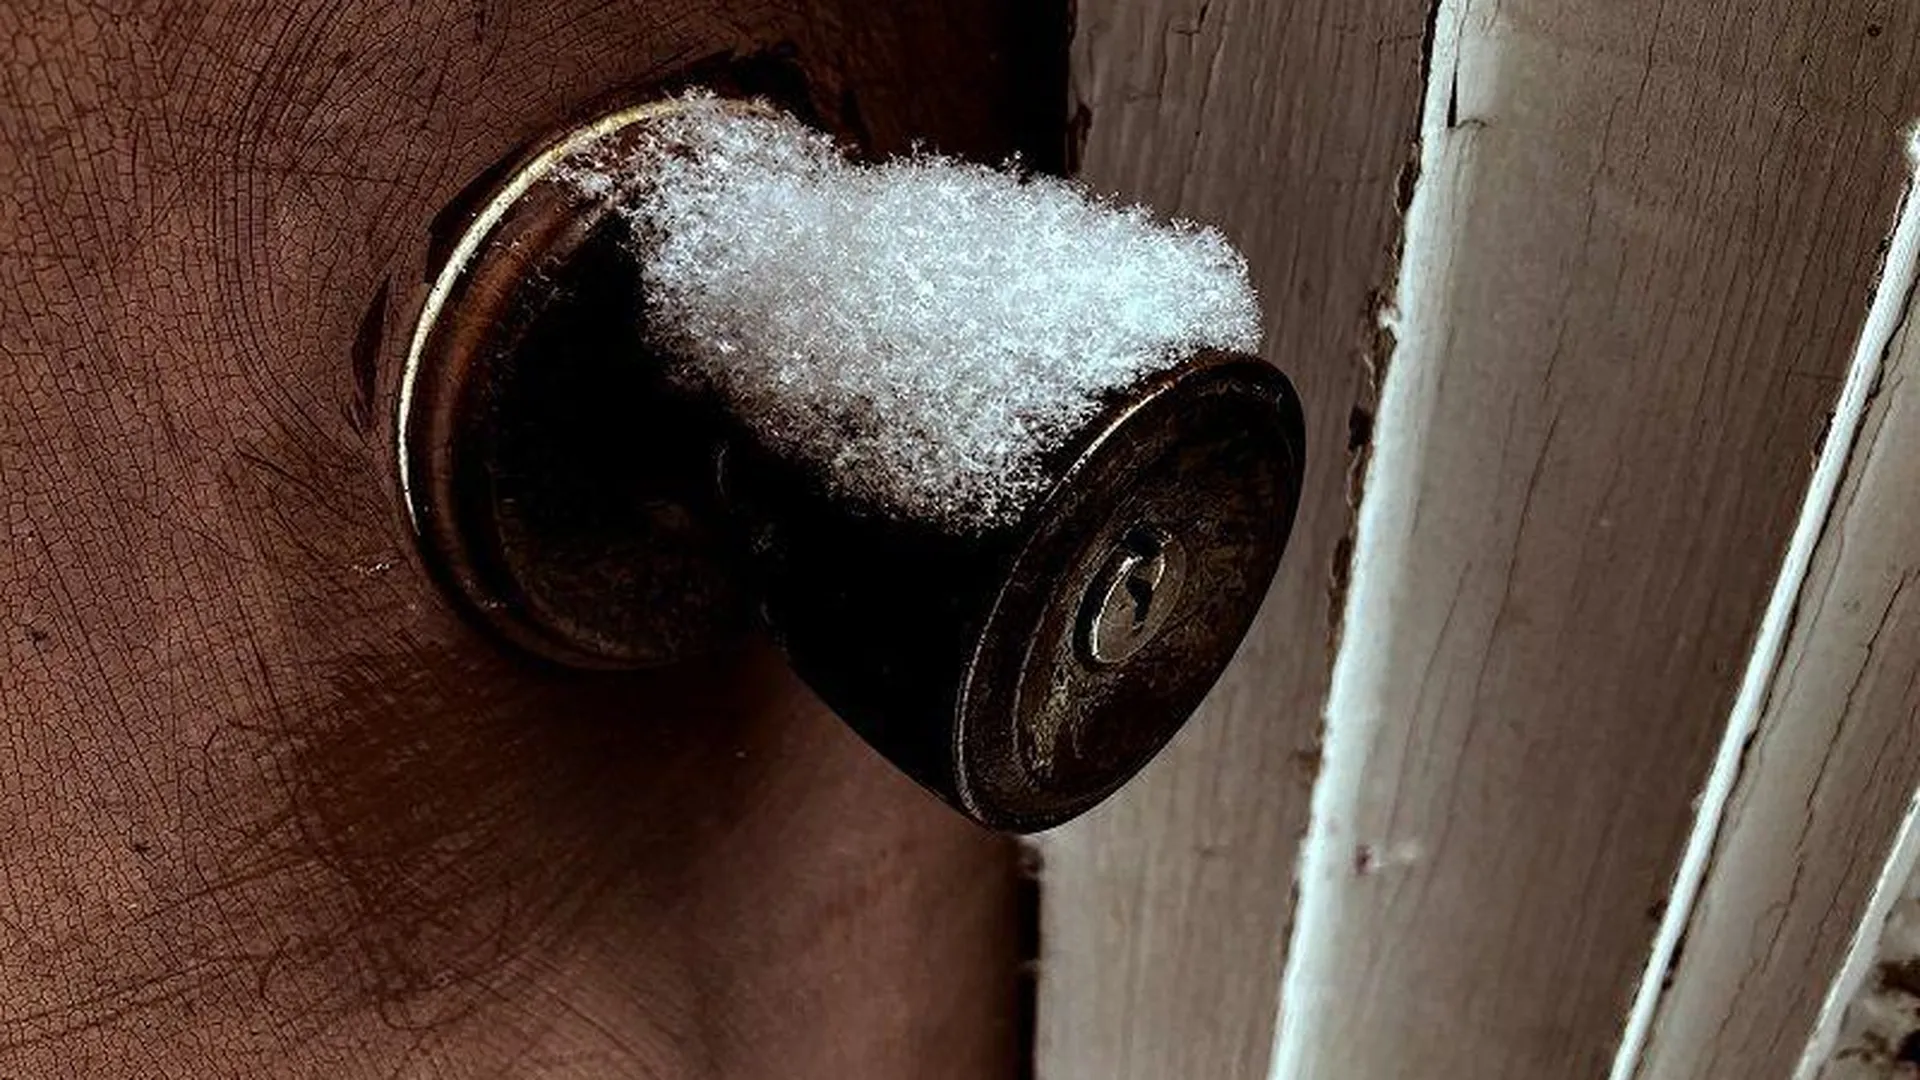 Снегом завалили дверь в квартиру жителя Люберец из-за парковочной войны